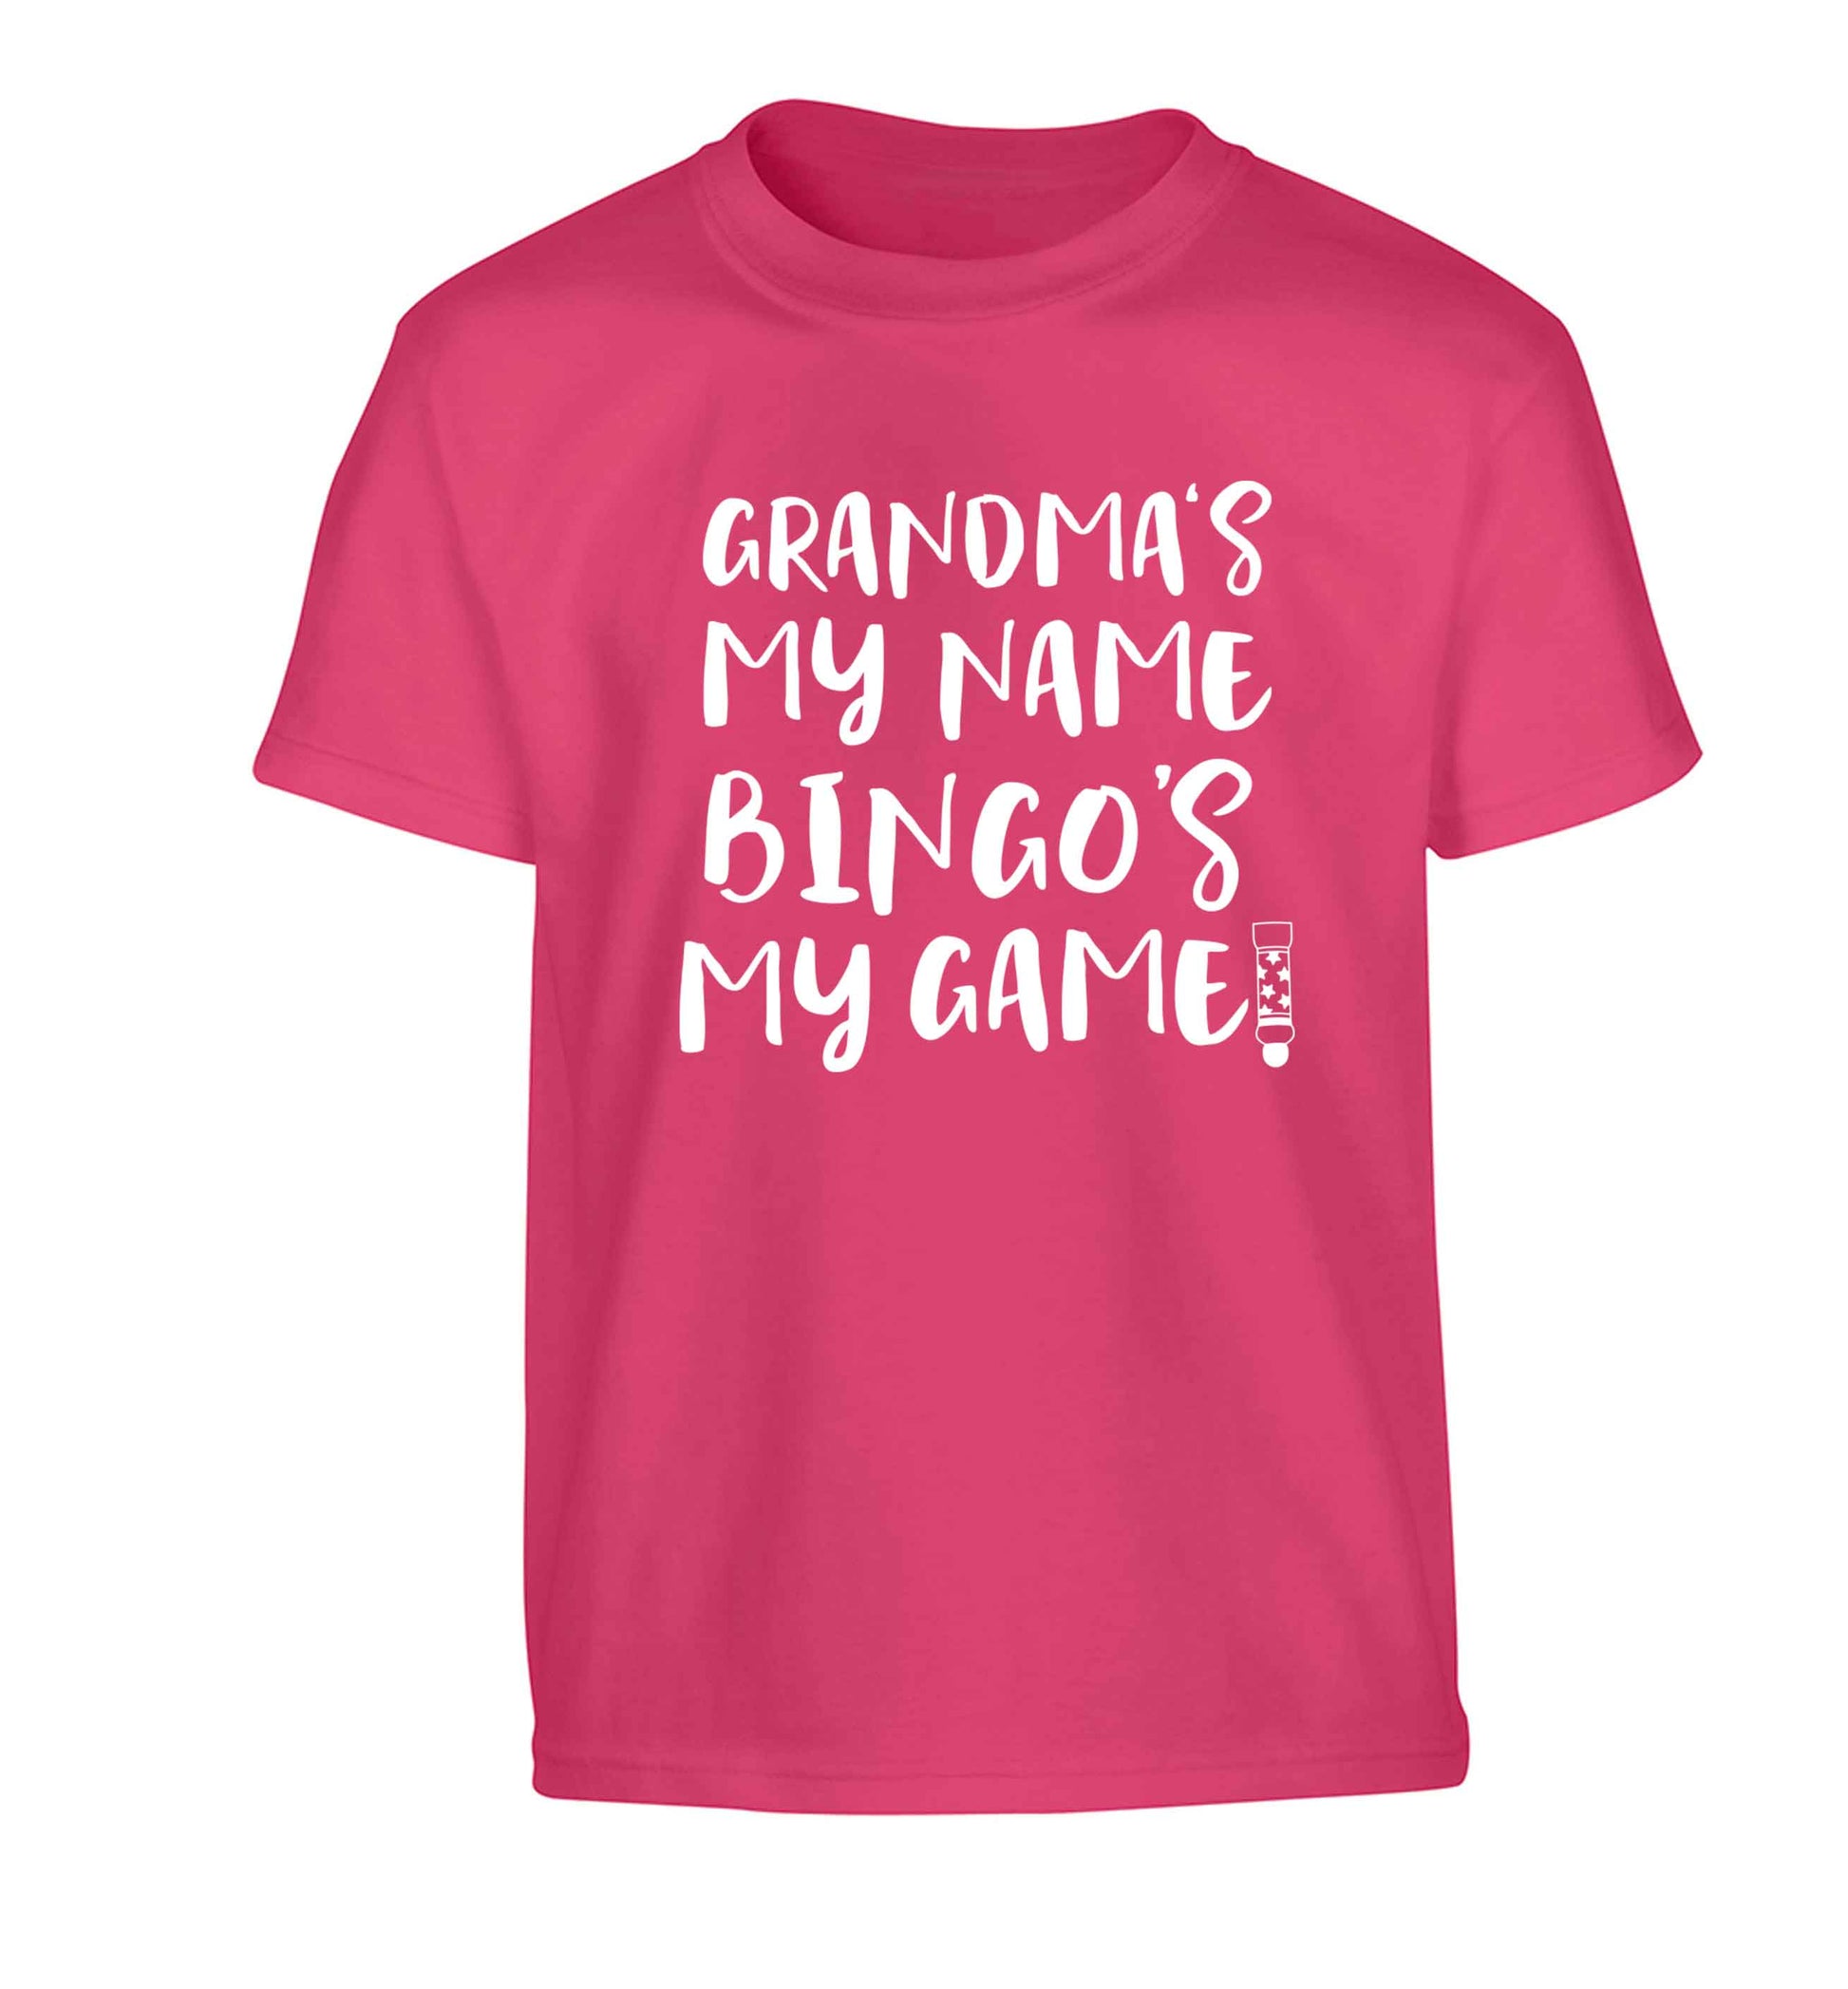 Grandma's my name bingo's my game! Children's pink Tshirt 12-13 Years